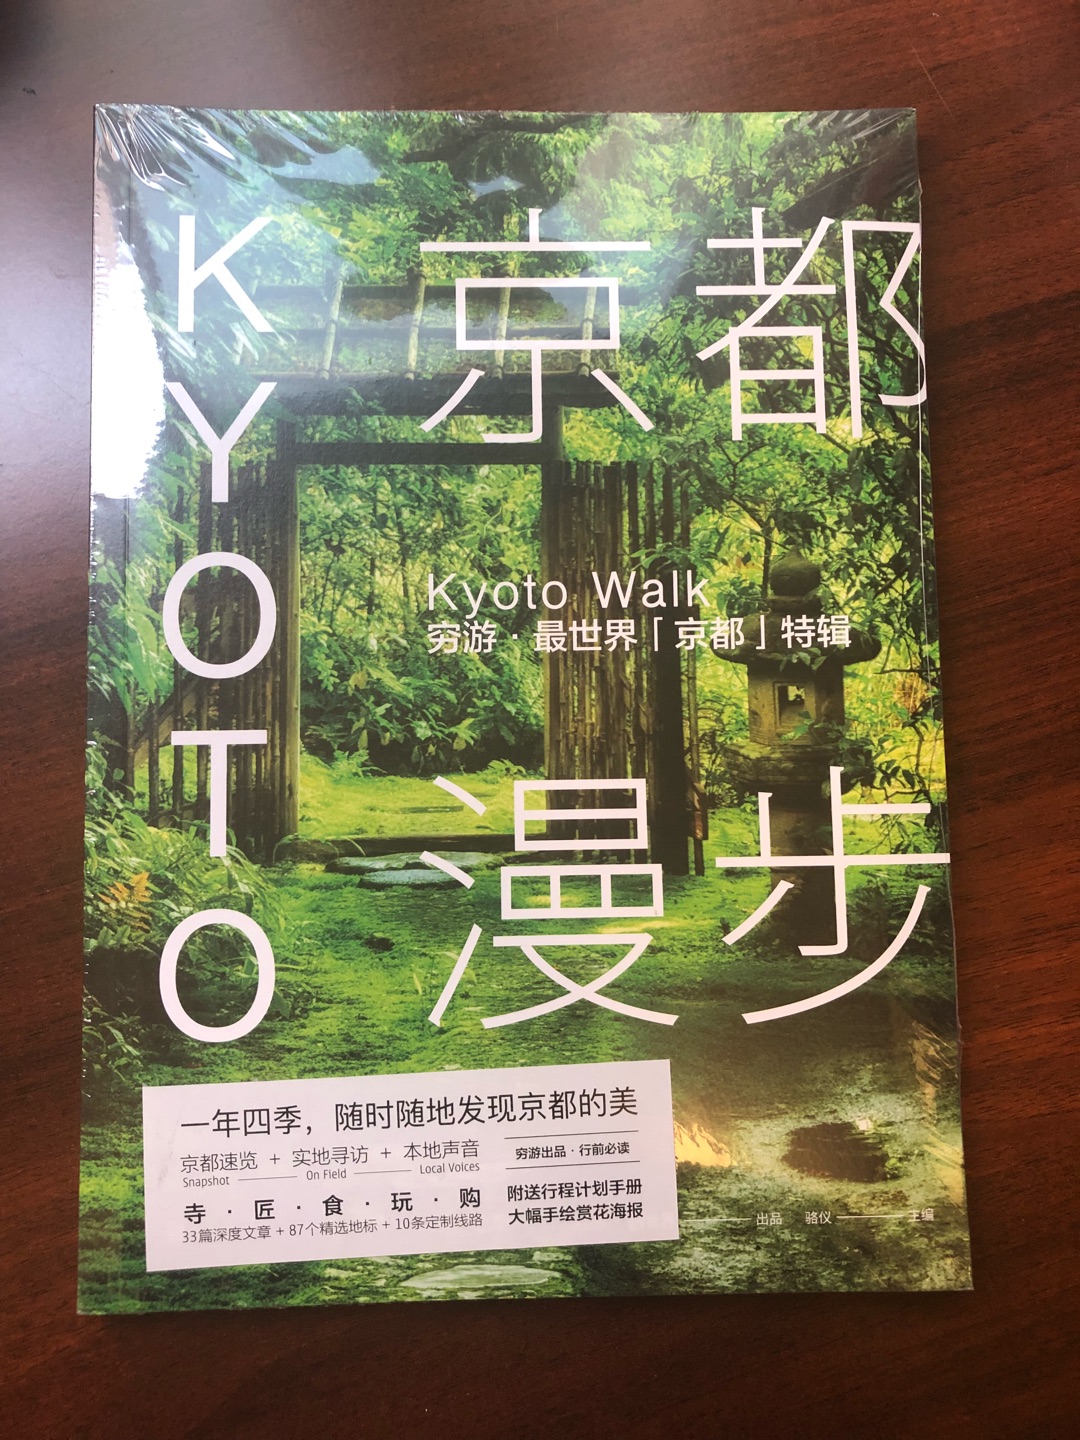 被书名吸引了，一直向往和期待京都之行，希望这本书对我了解和认识京有帮助！